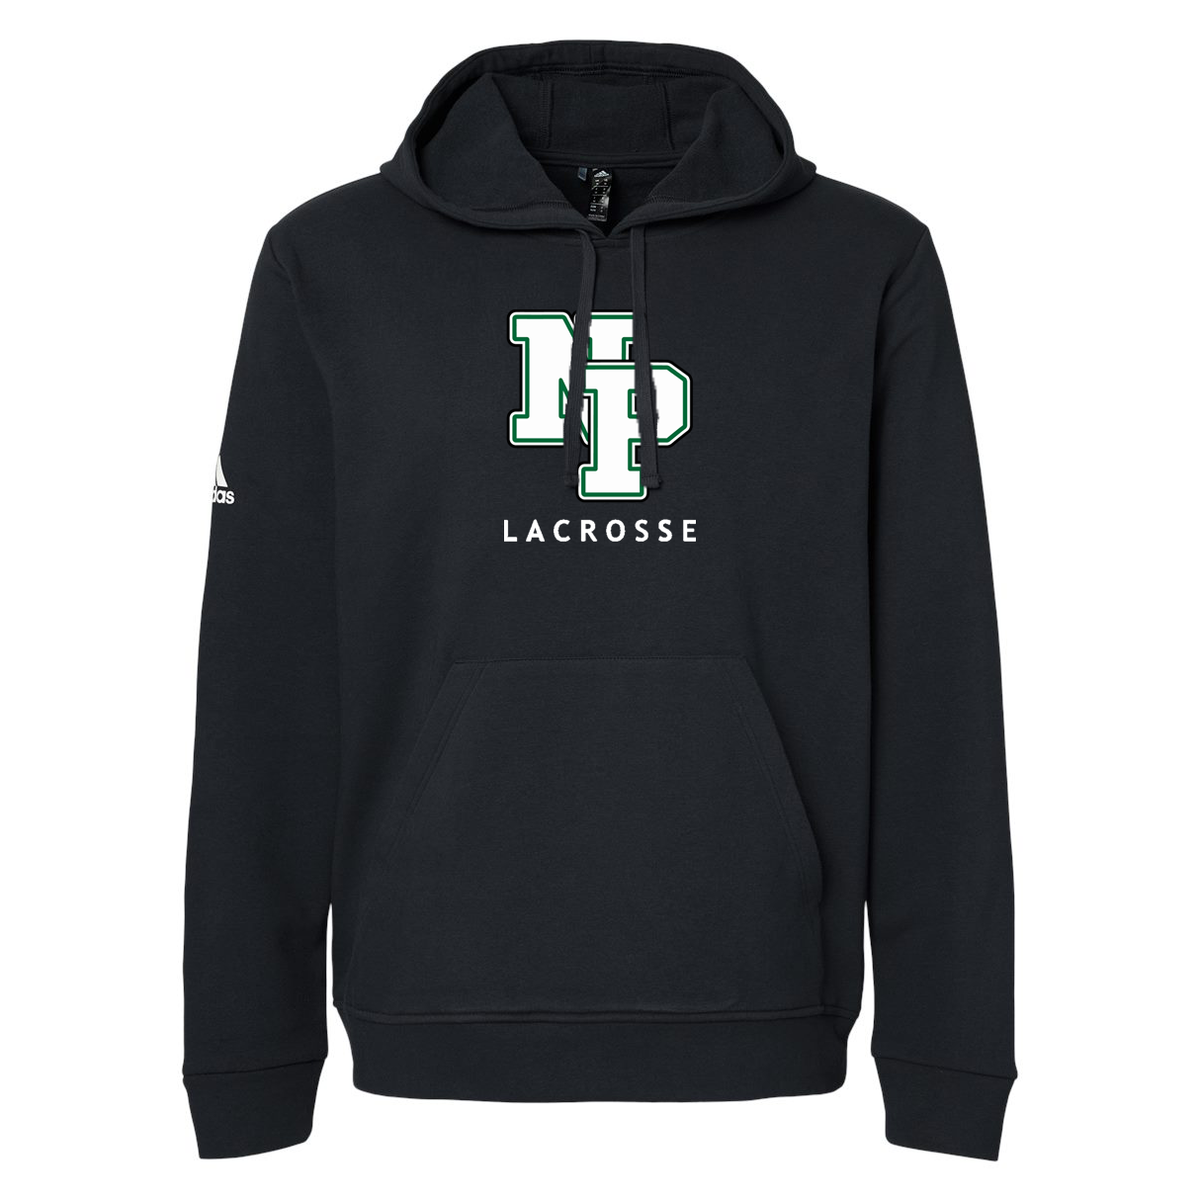 New Providence Lacrosse Adidas Fleece Hooded Sweatshirt